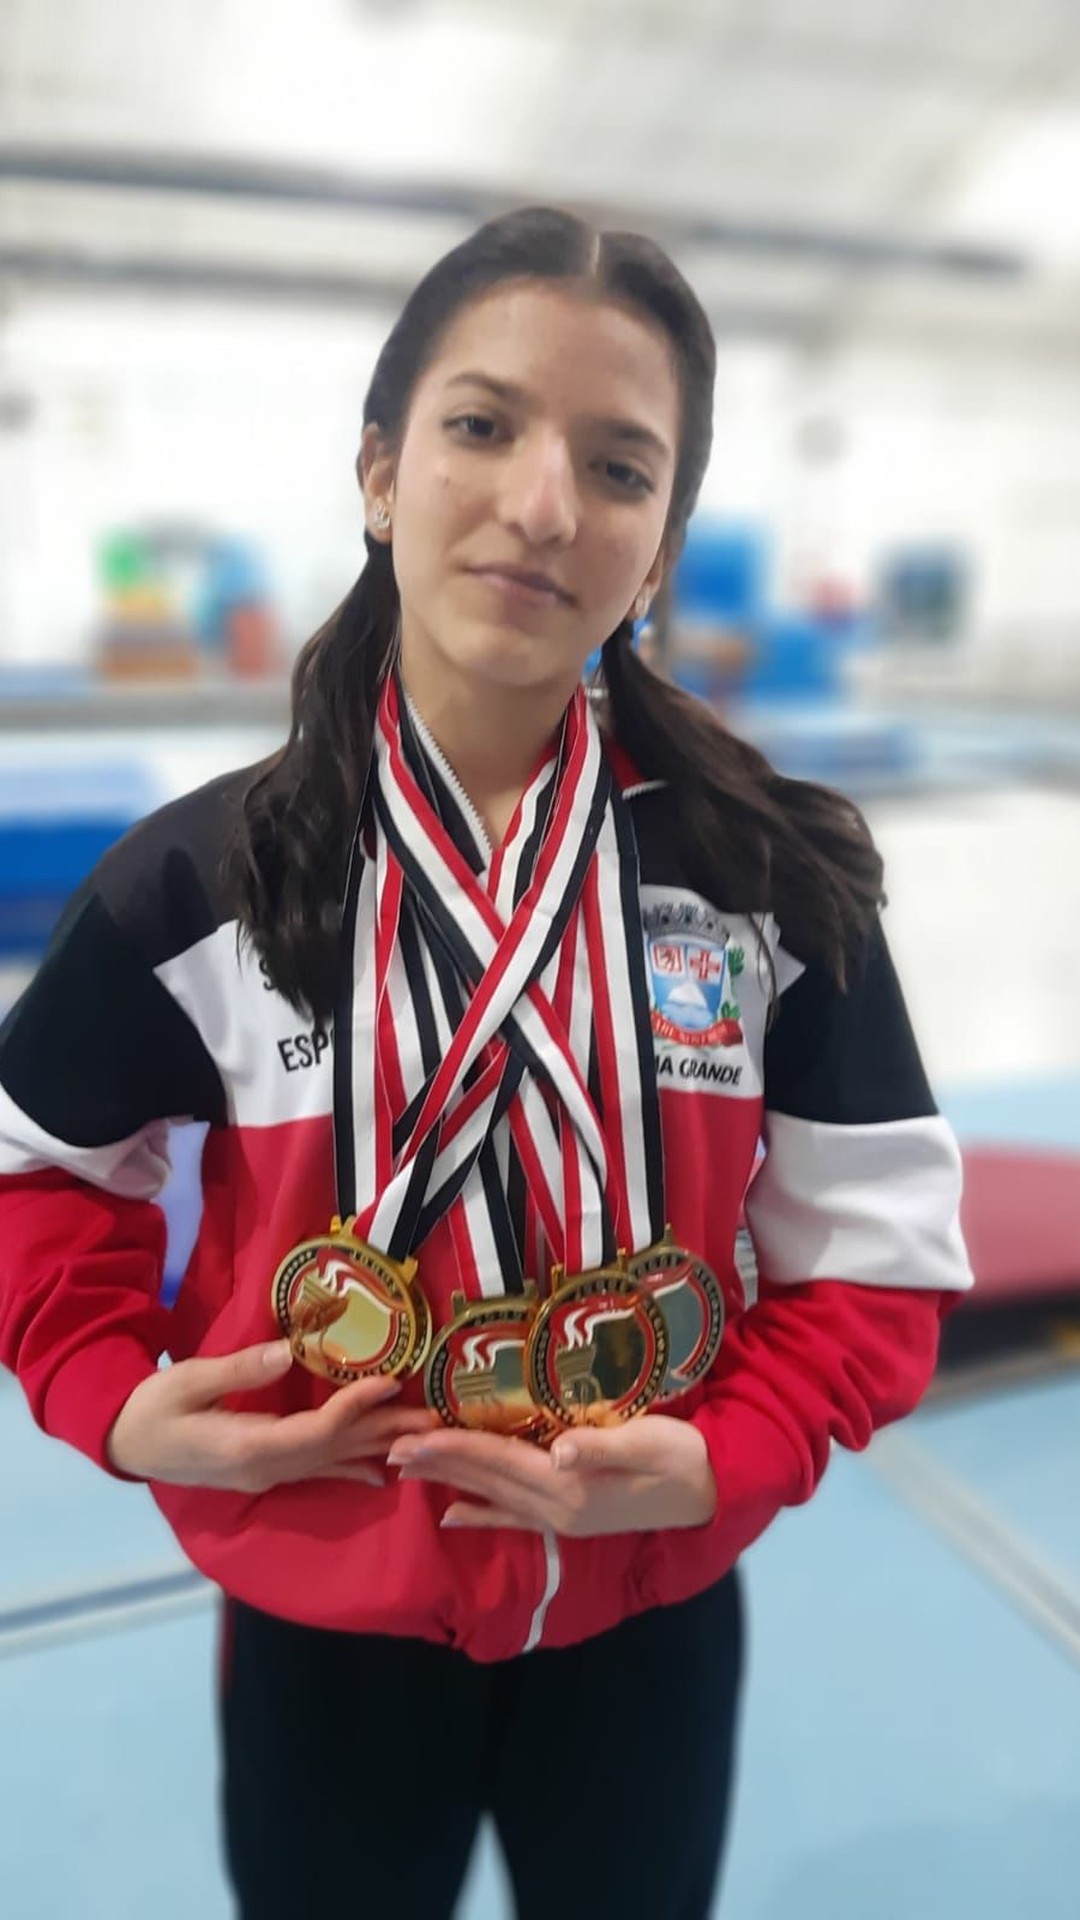 Rebeca Andrade supera Simone Biles e conquista o ouro no salto no Mundial  de Ginástica Artística - Jogada - Diário do Nordeste